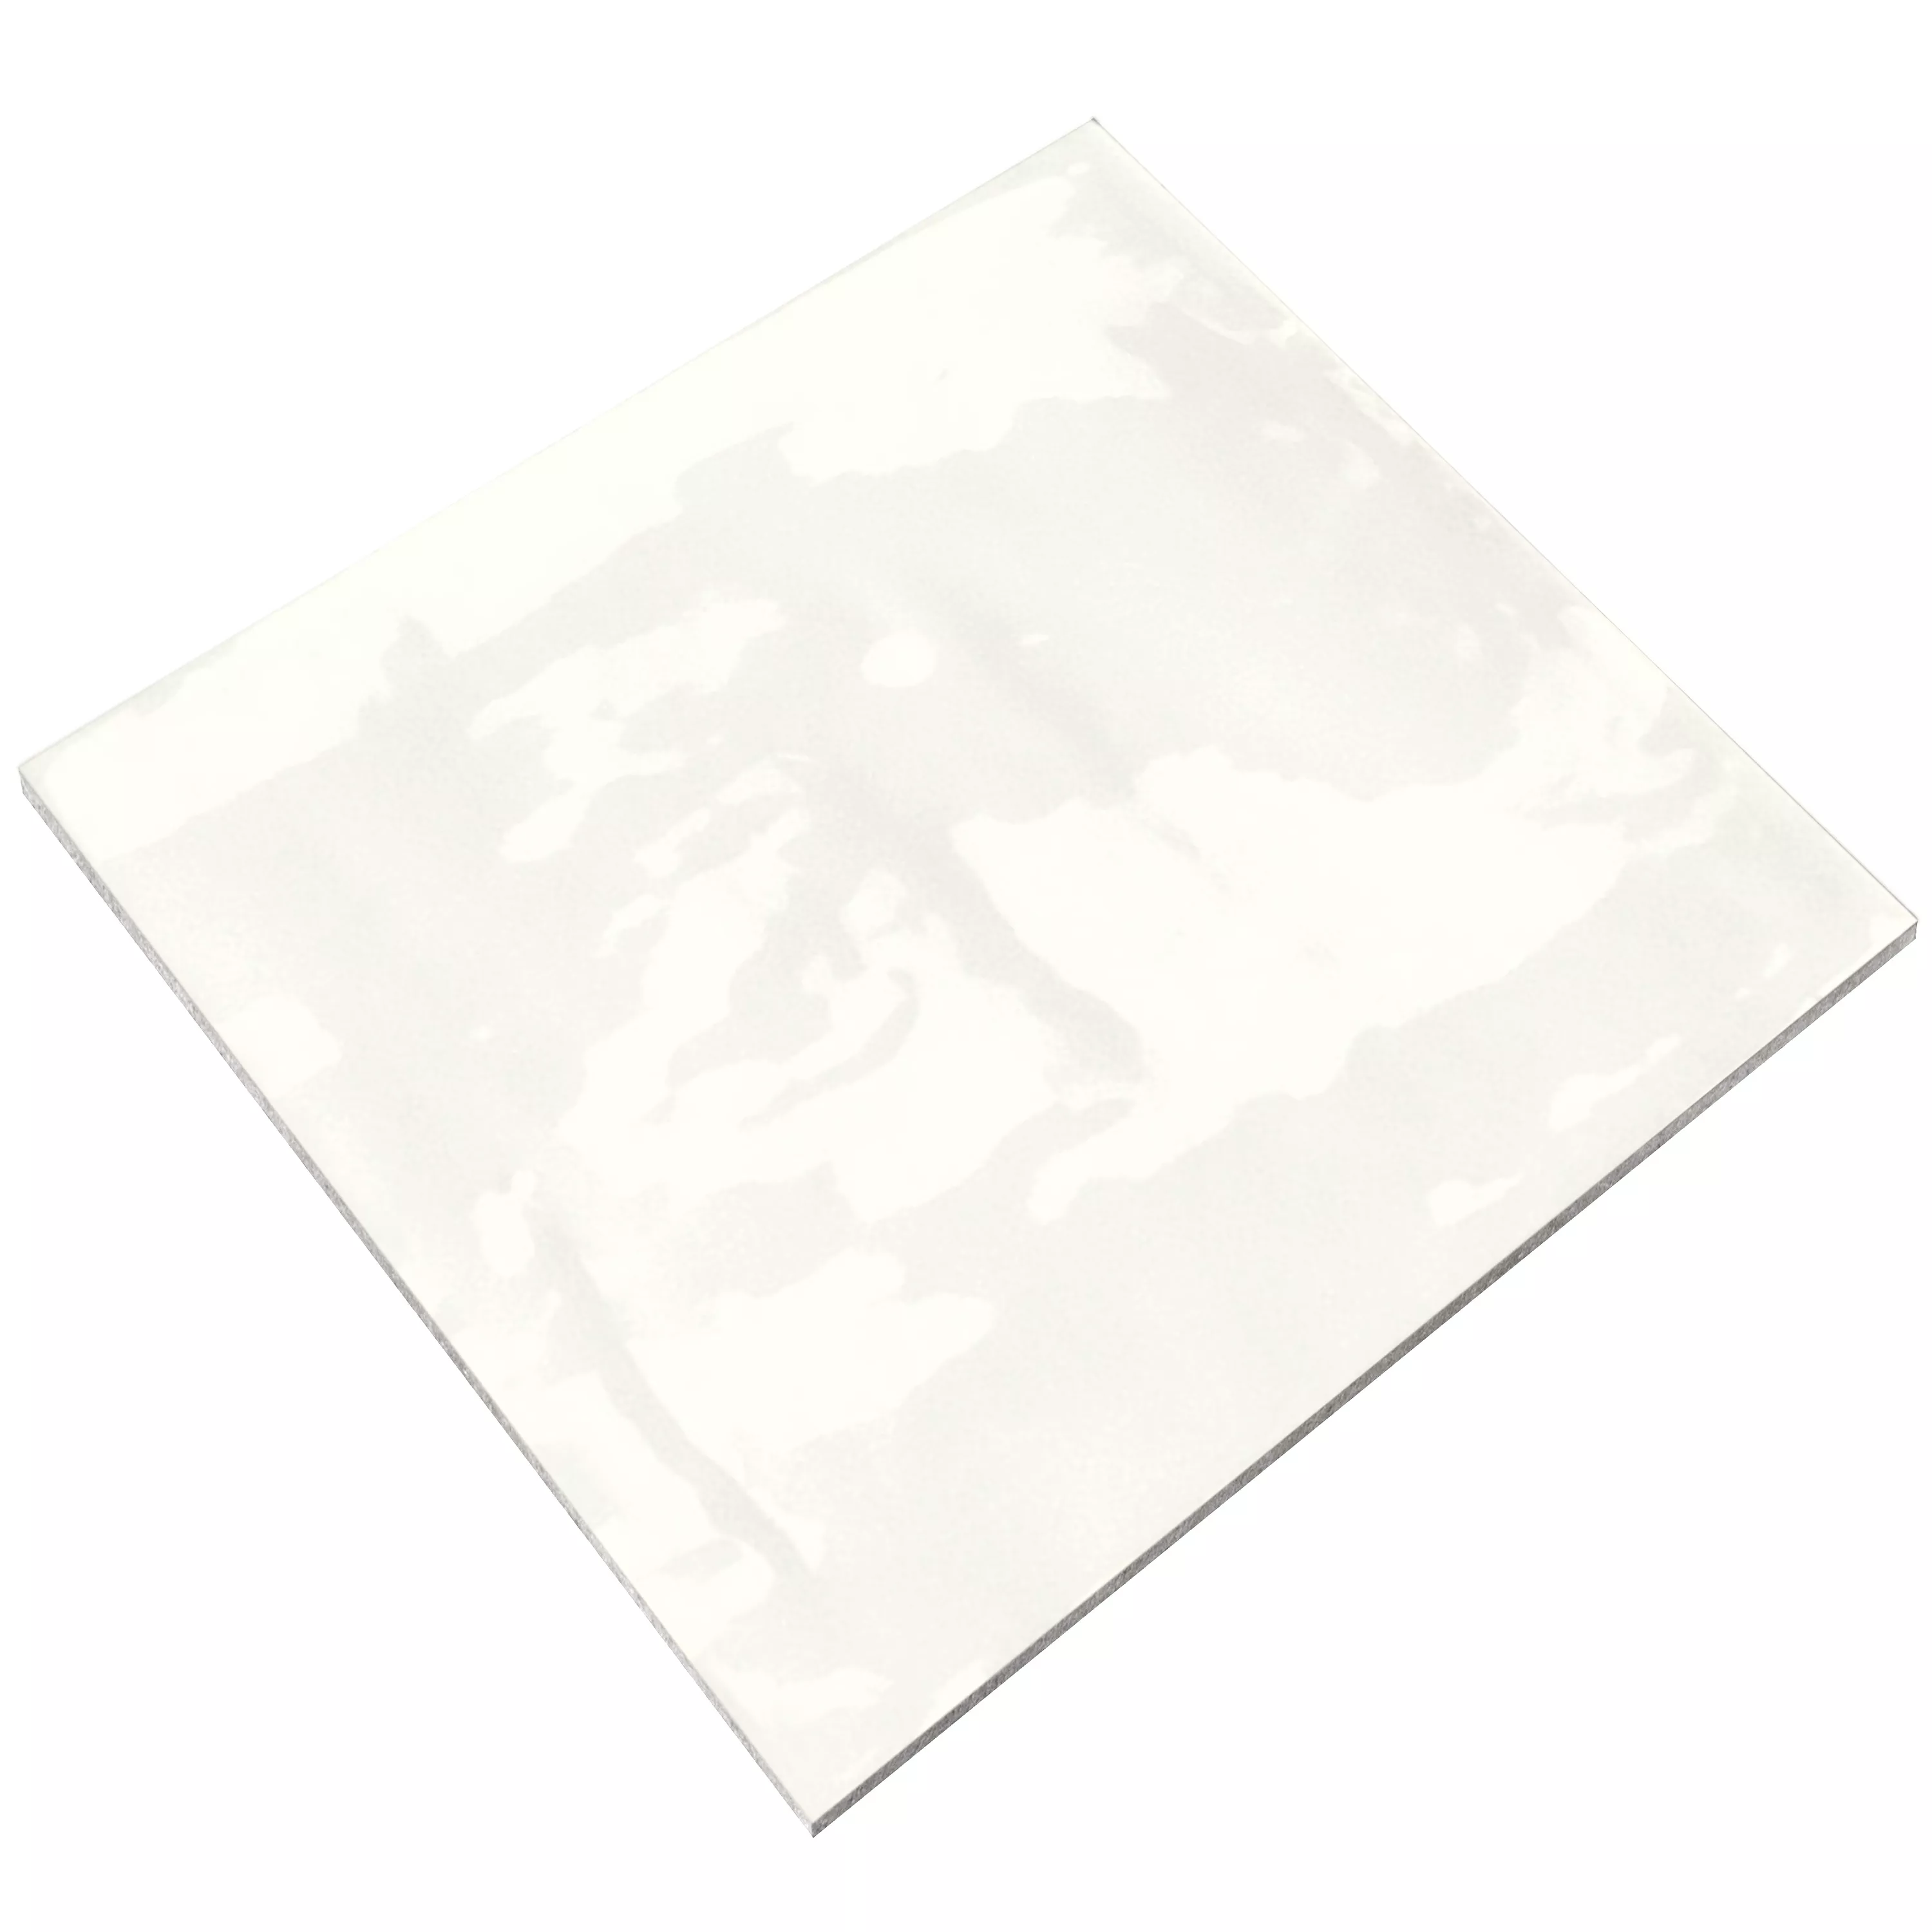 Płytki Ścienne Marbella Karbowany 15x15cm Królewna Śnieżka